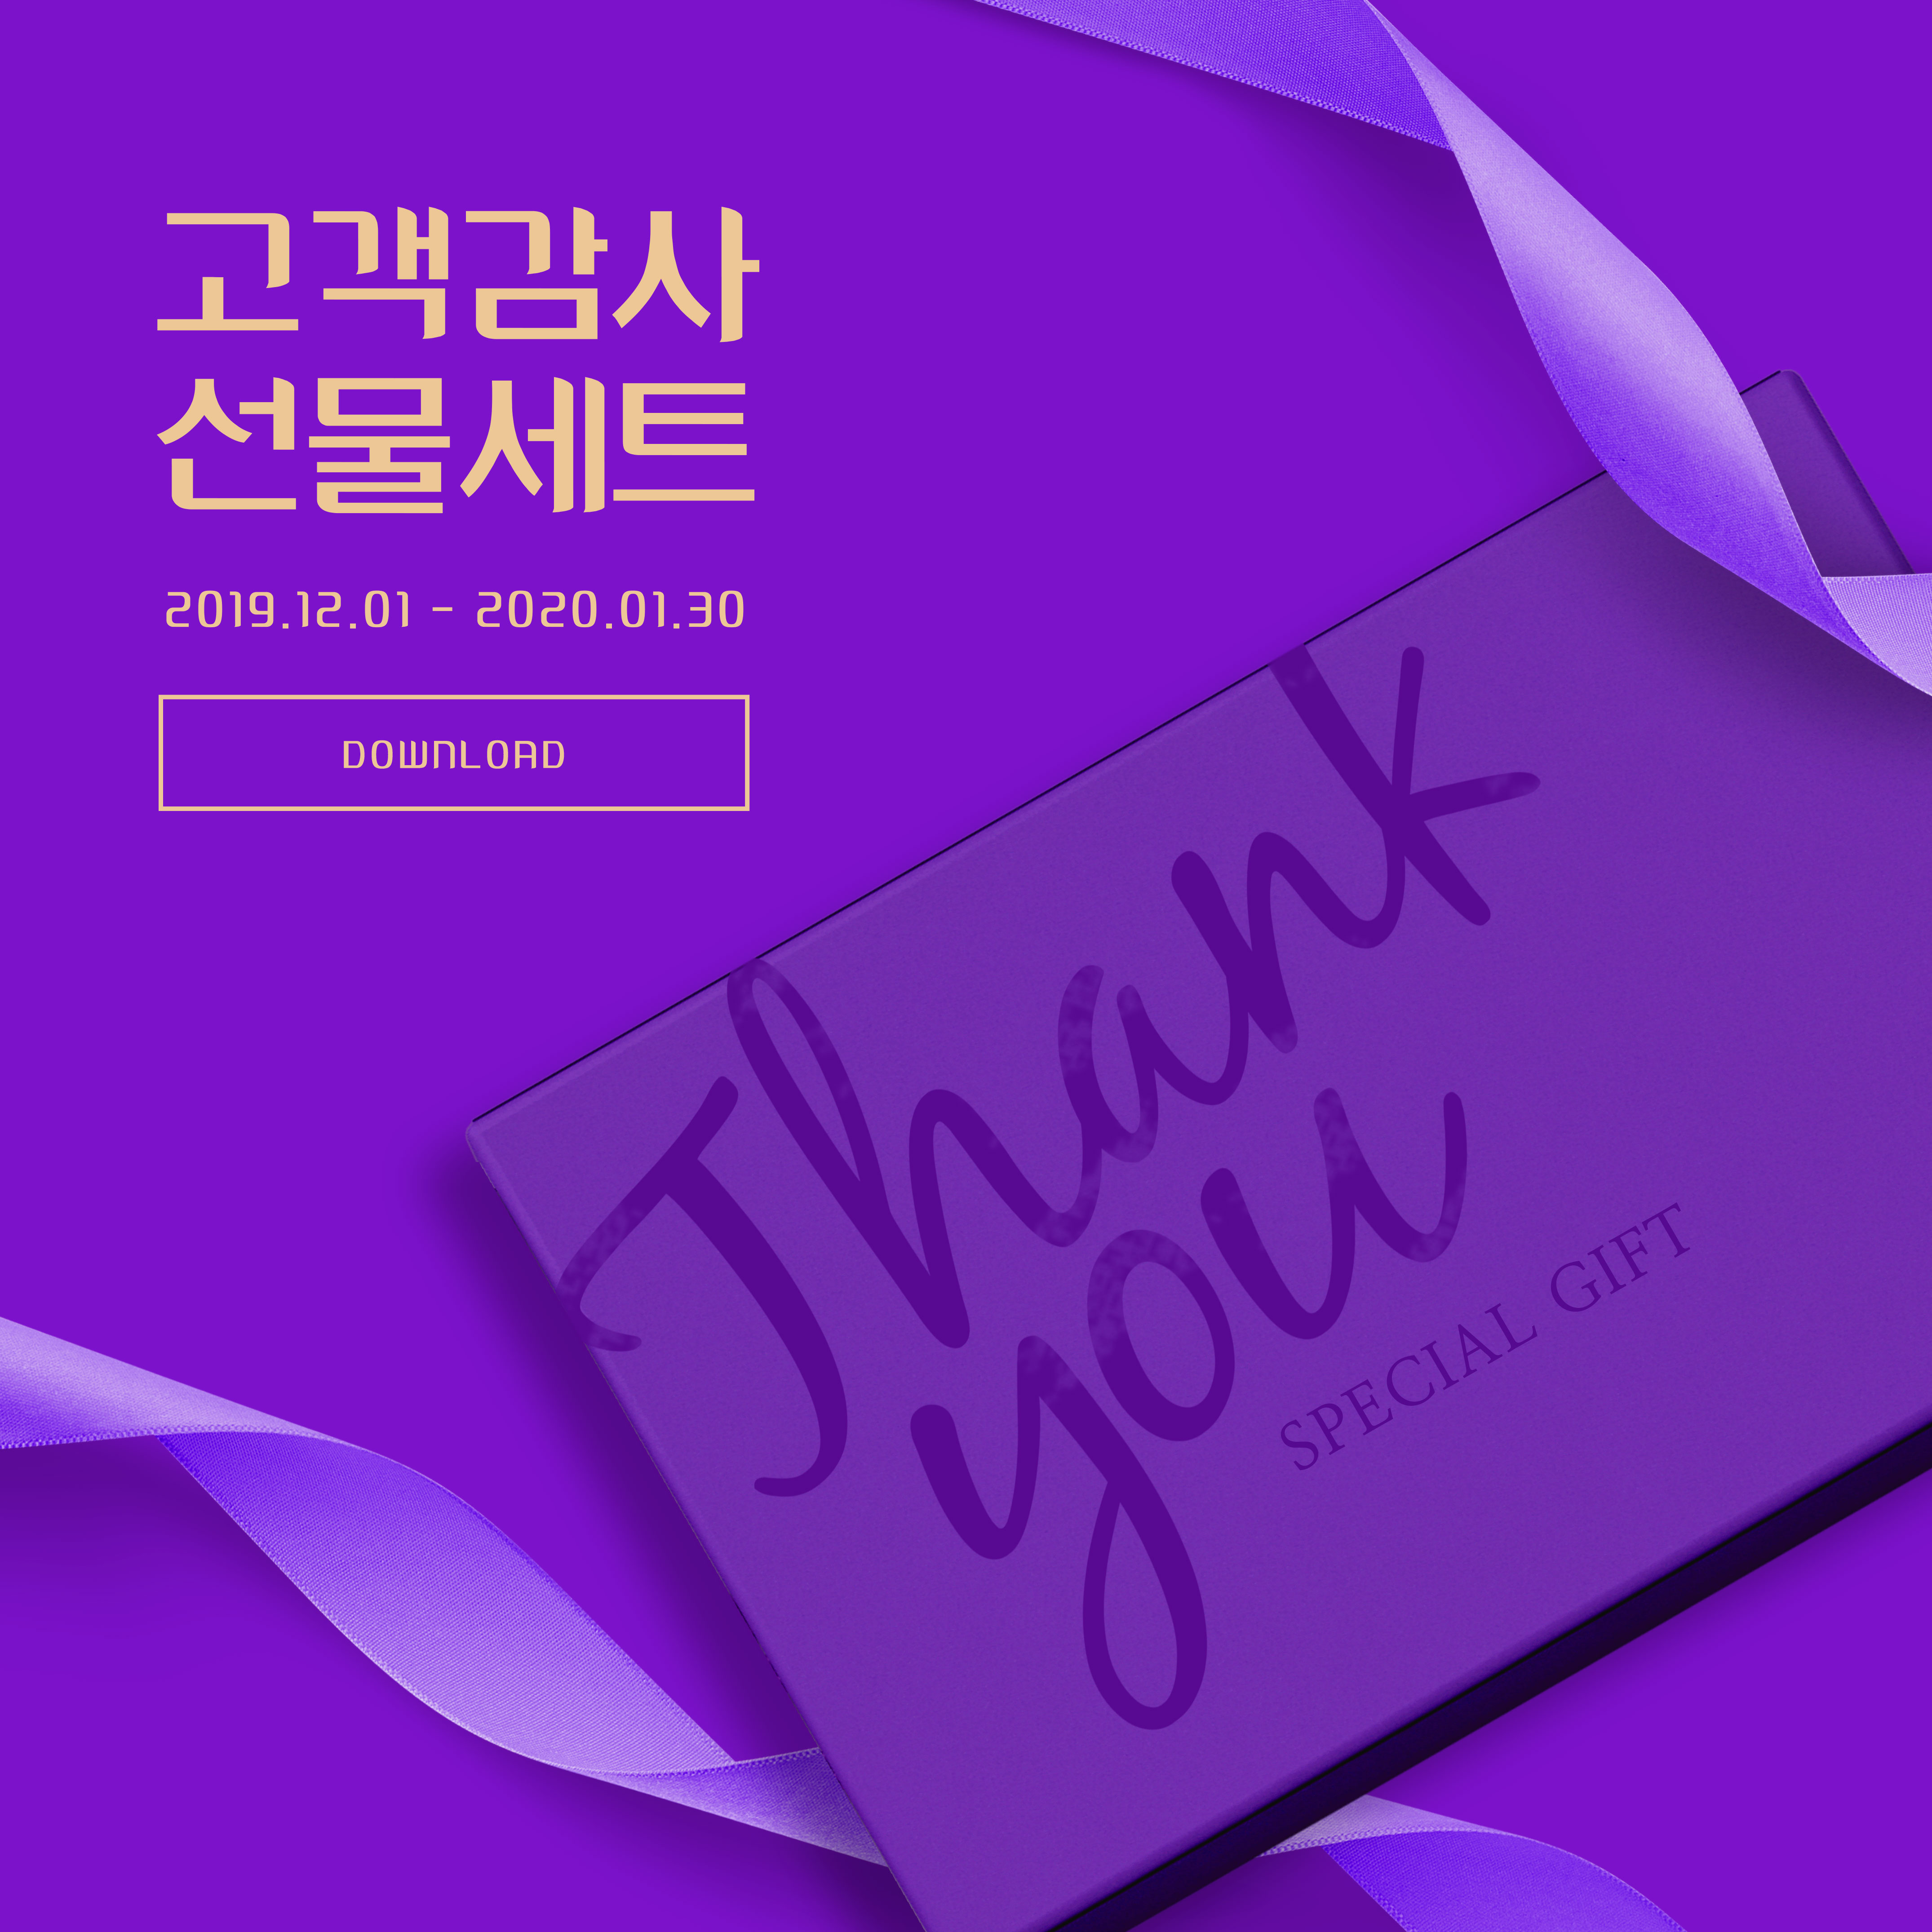 周年纪念活动礼品回馈主题深紫色海报PSD素材素材中国精选素材插图